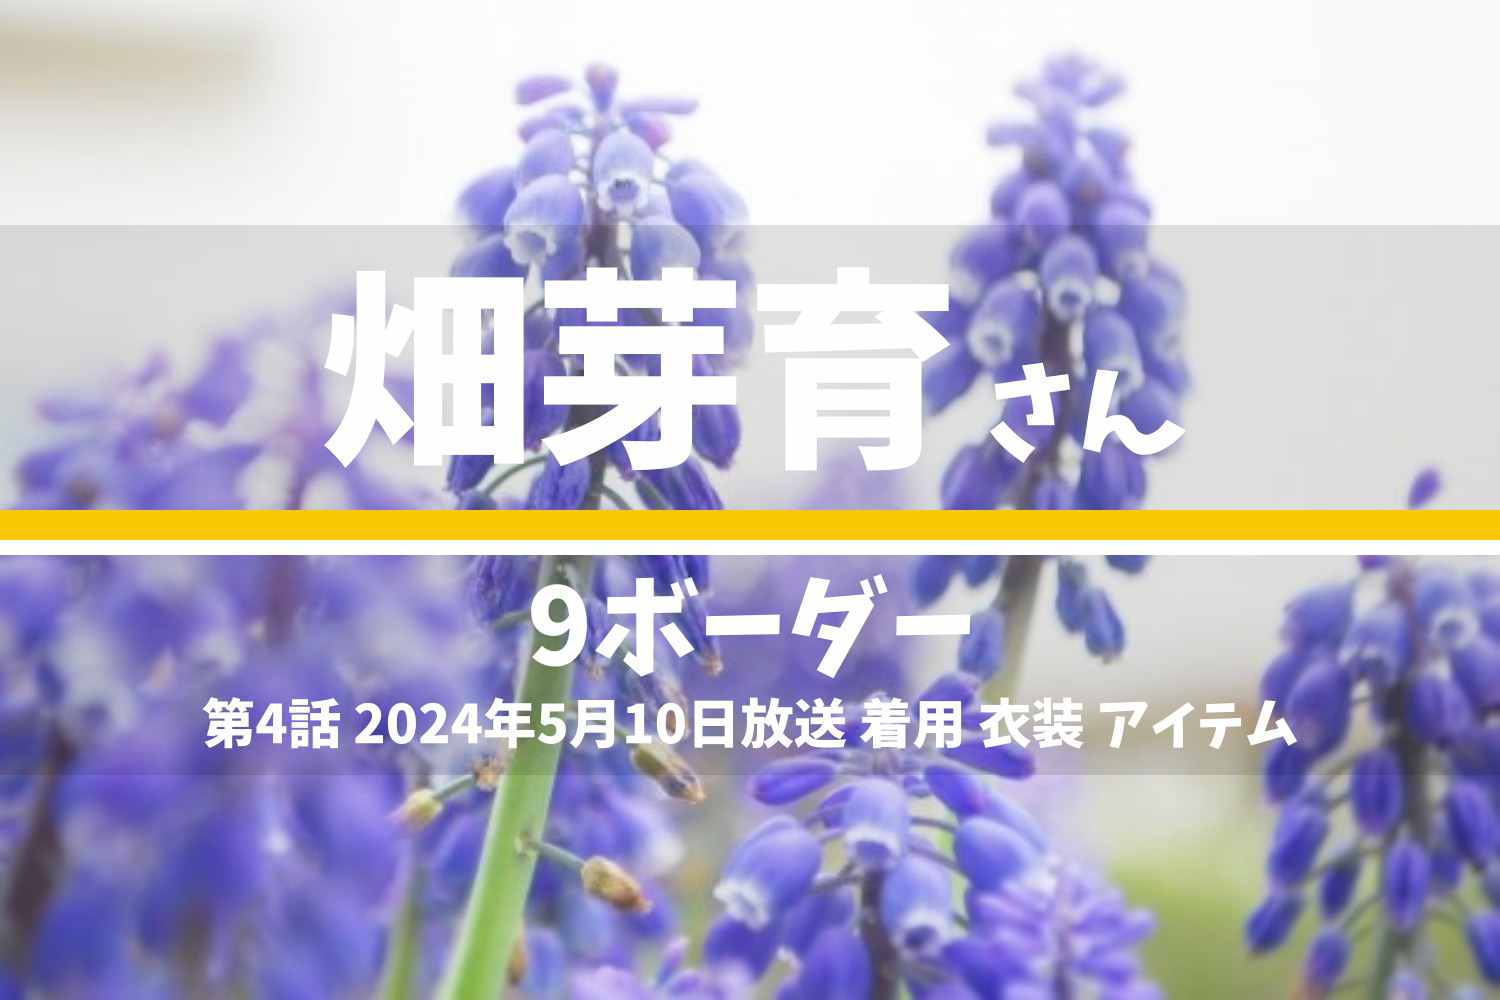 9ボーダー 畑芽育さん テレビドラマ 衣装 2024年5月10日放送